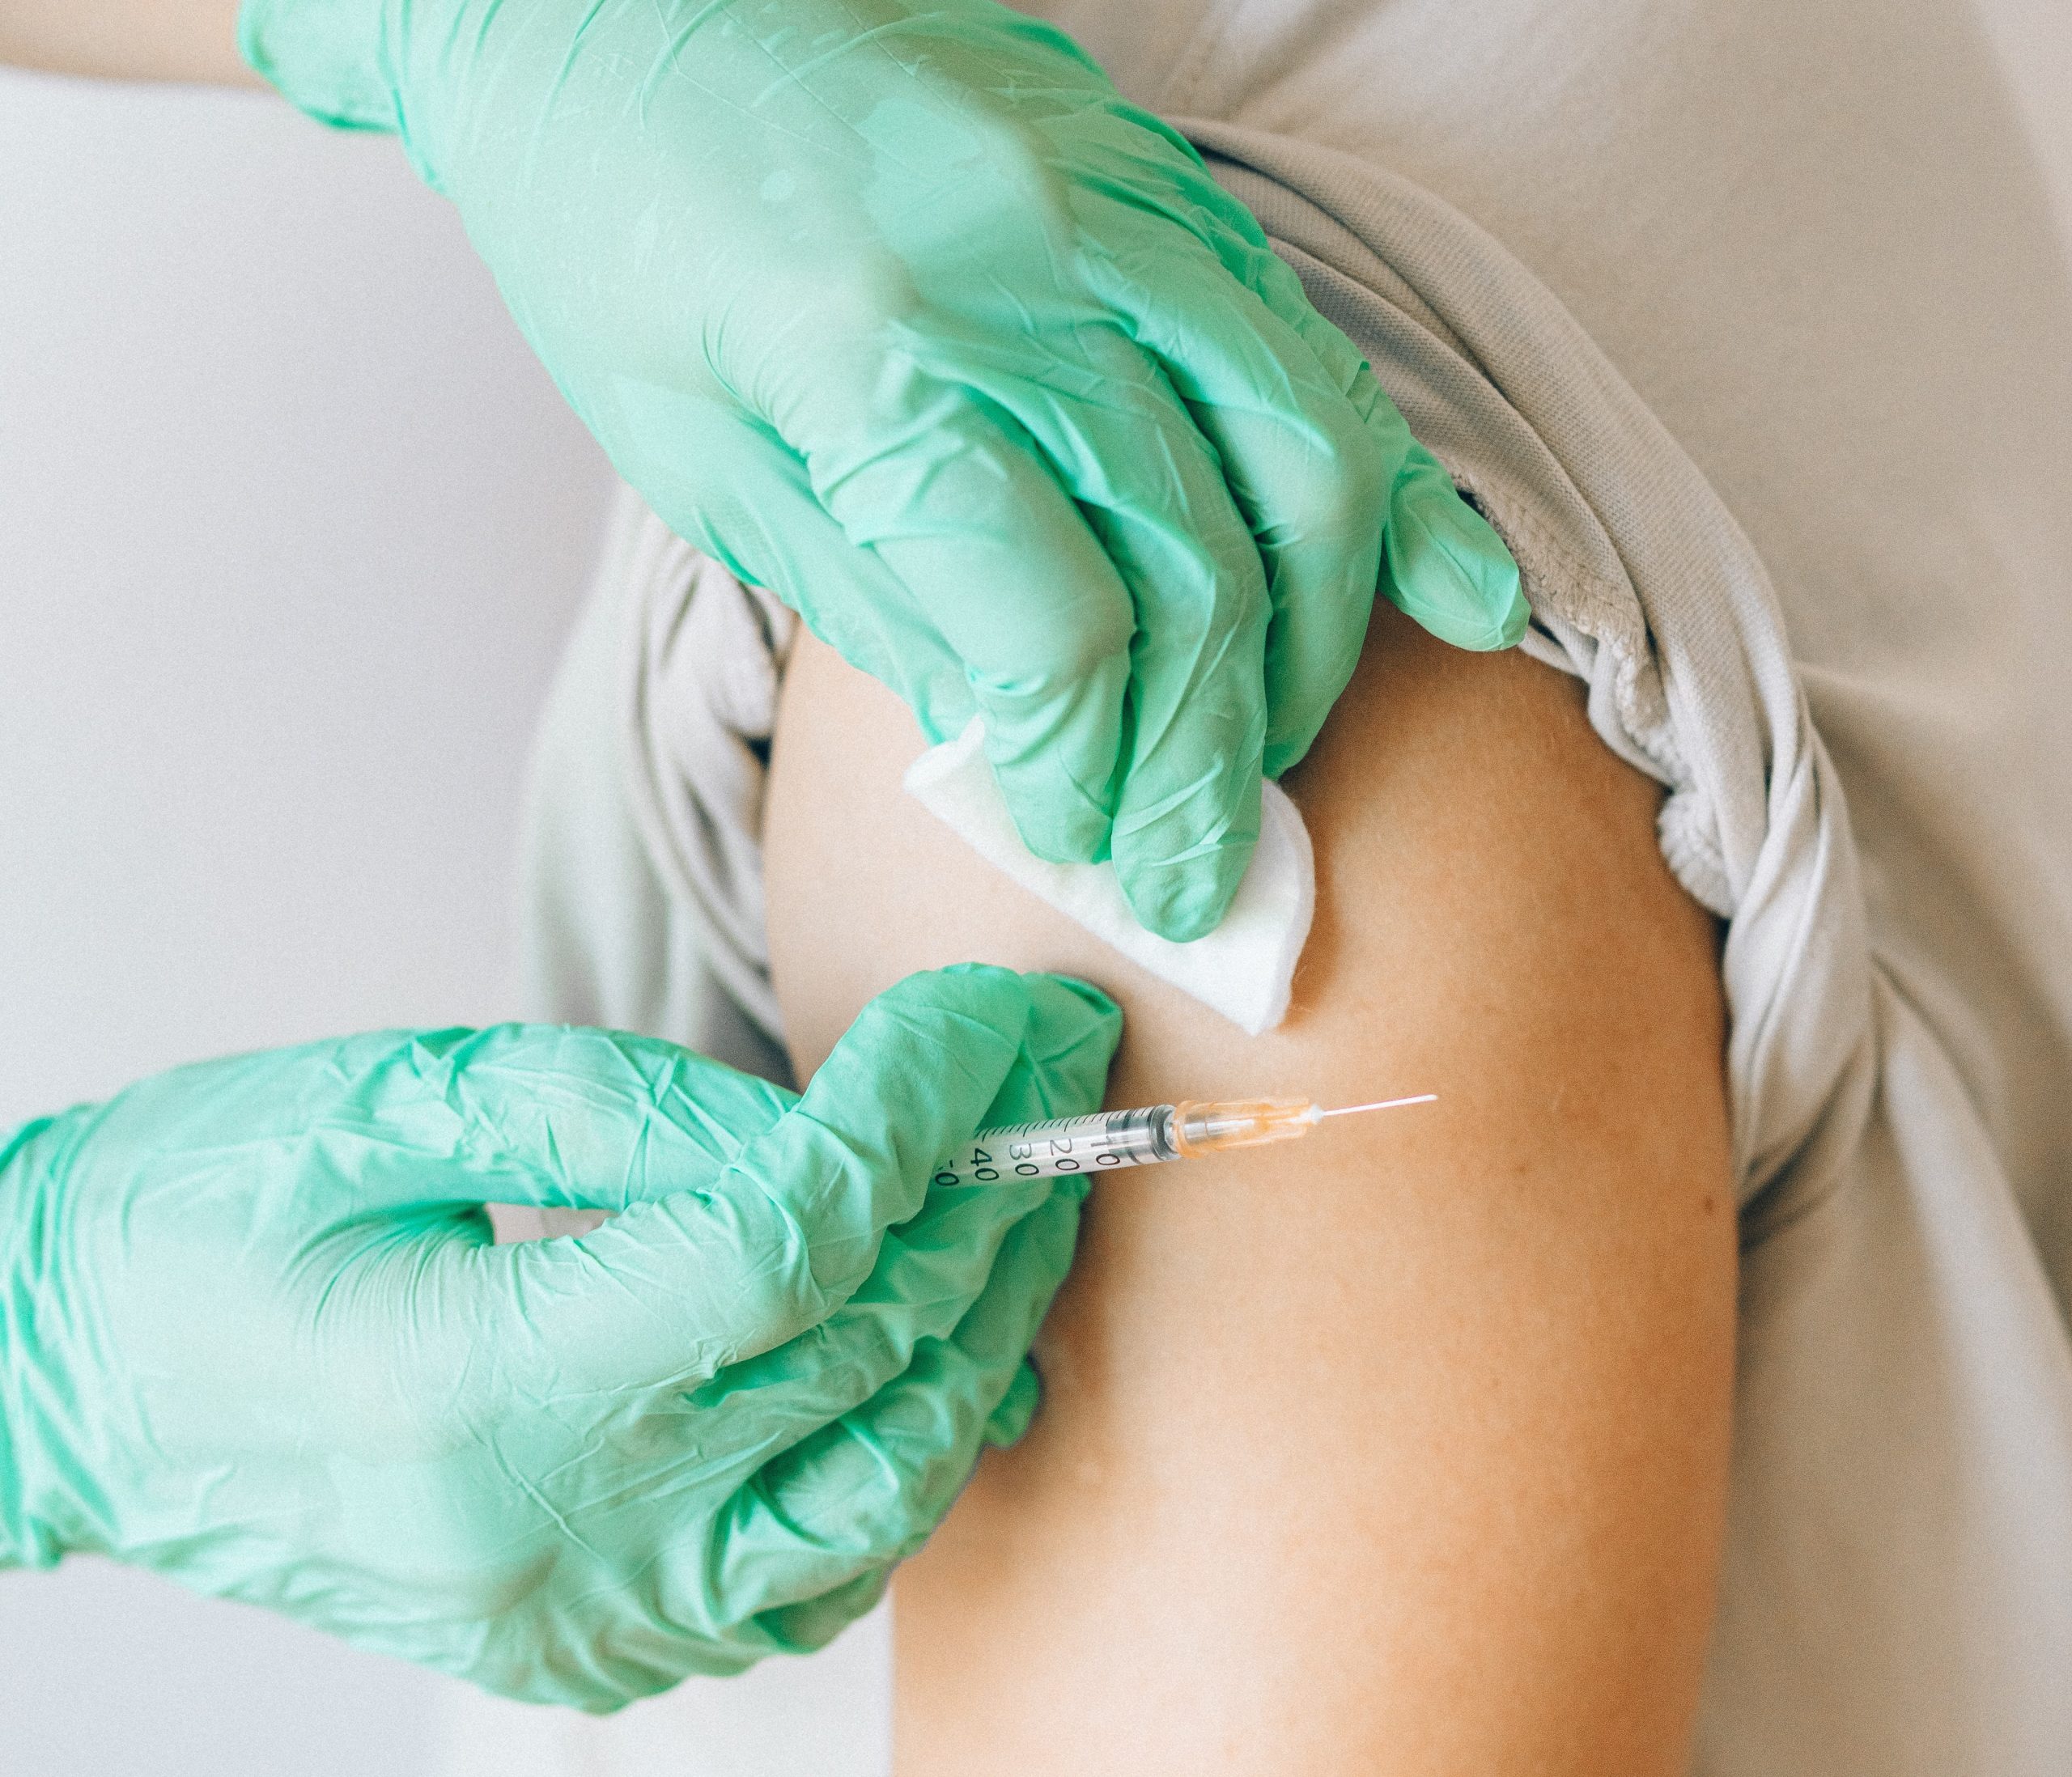 Bezpłatne szczepienia przeciwko HPV również w Lubinie